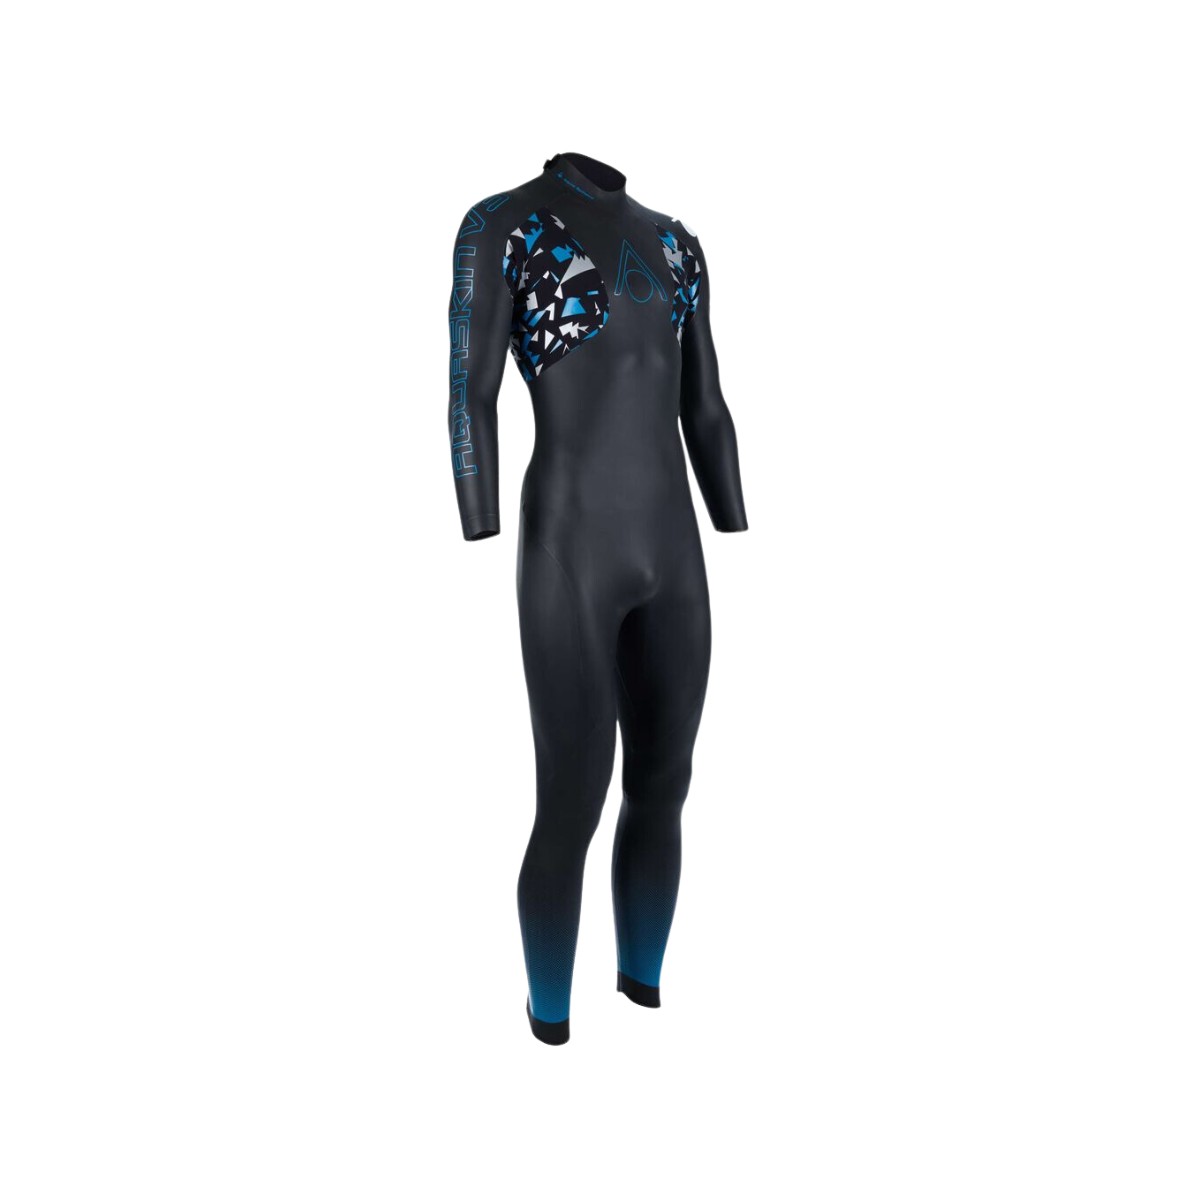 Wetsuit Aquasphere Aquaskin Full Suit V3 Black Turquoise, Size XL product